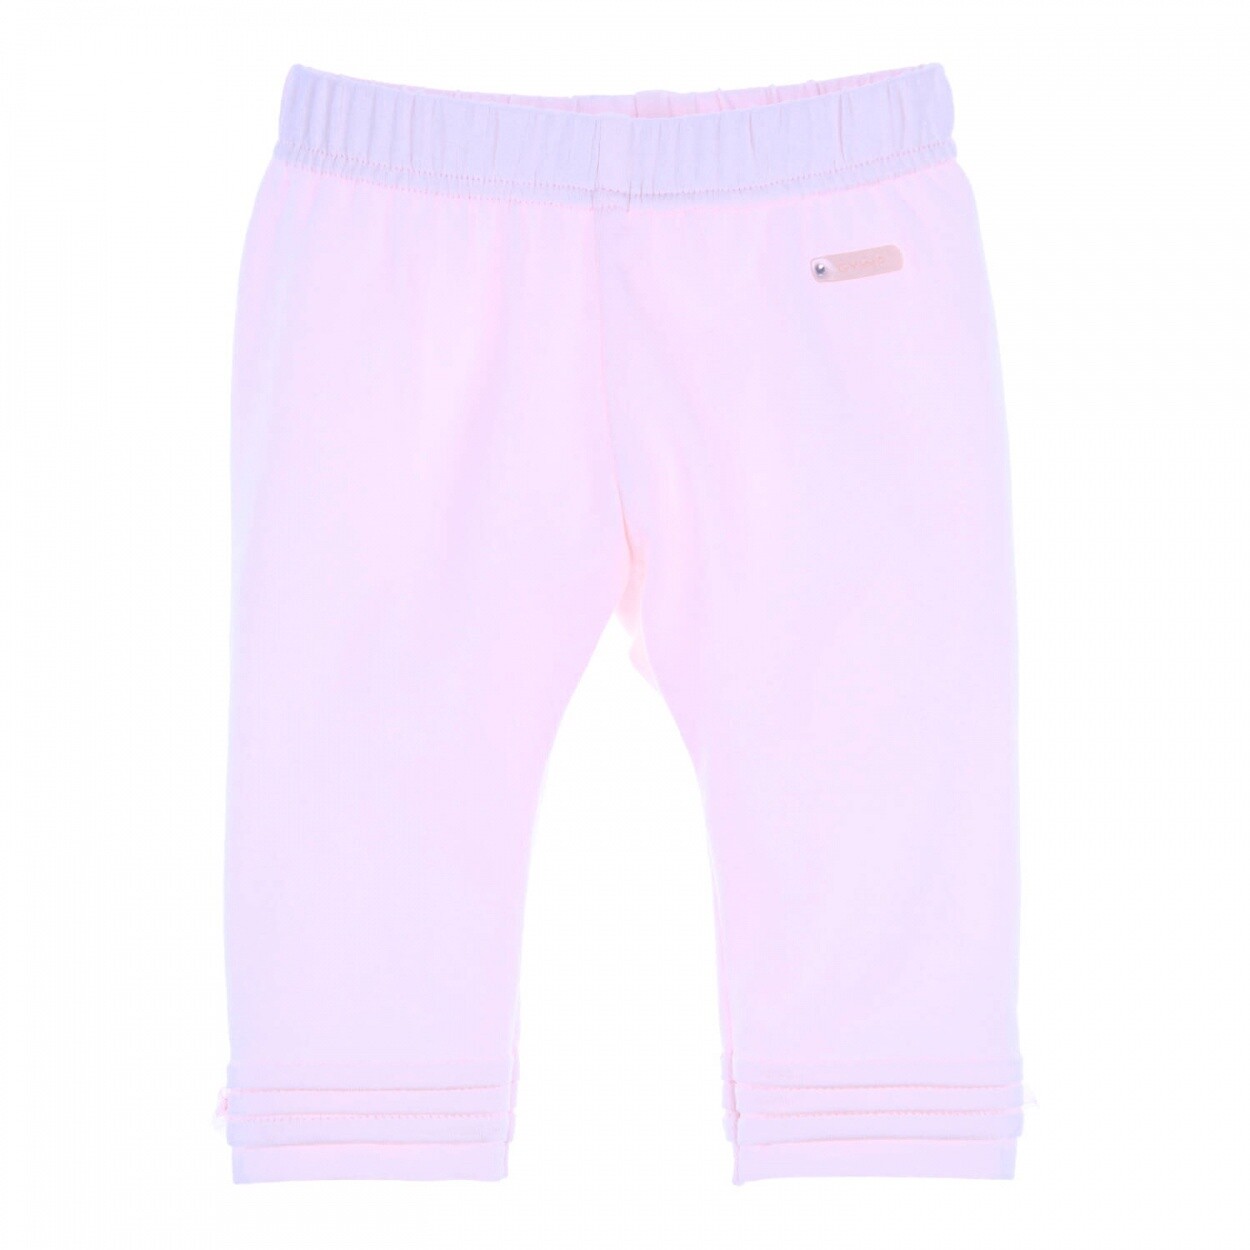 Gymp Legging Aerobic Light Pink 411-4118-11